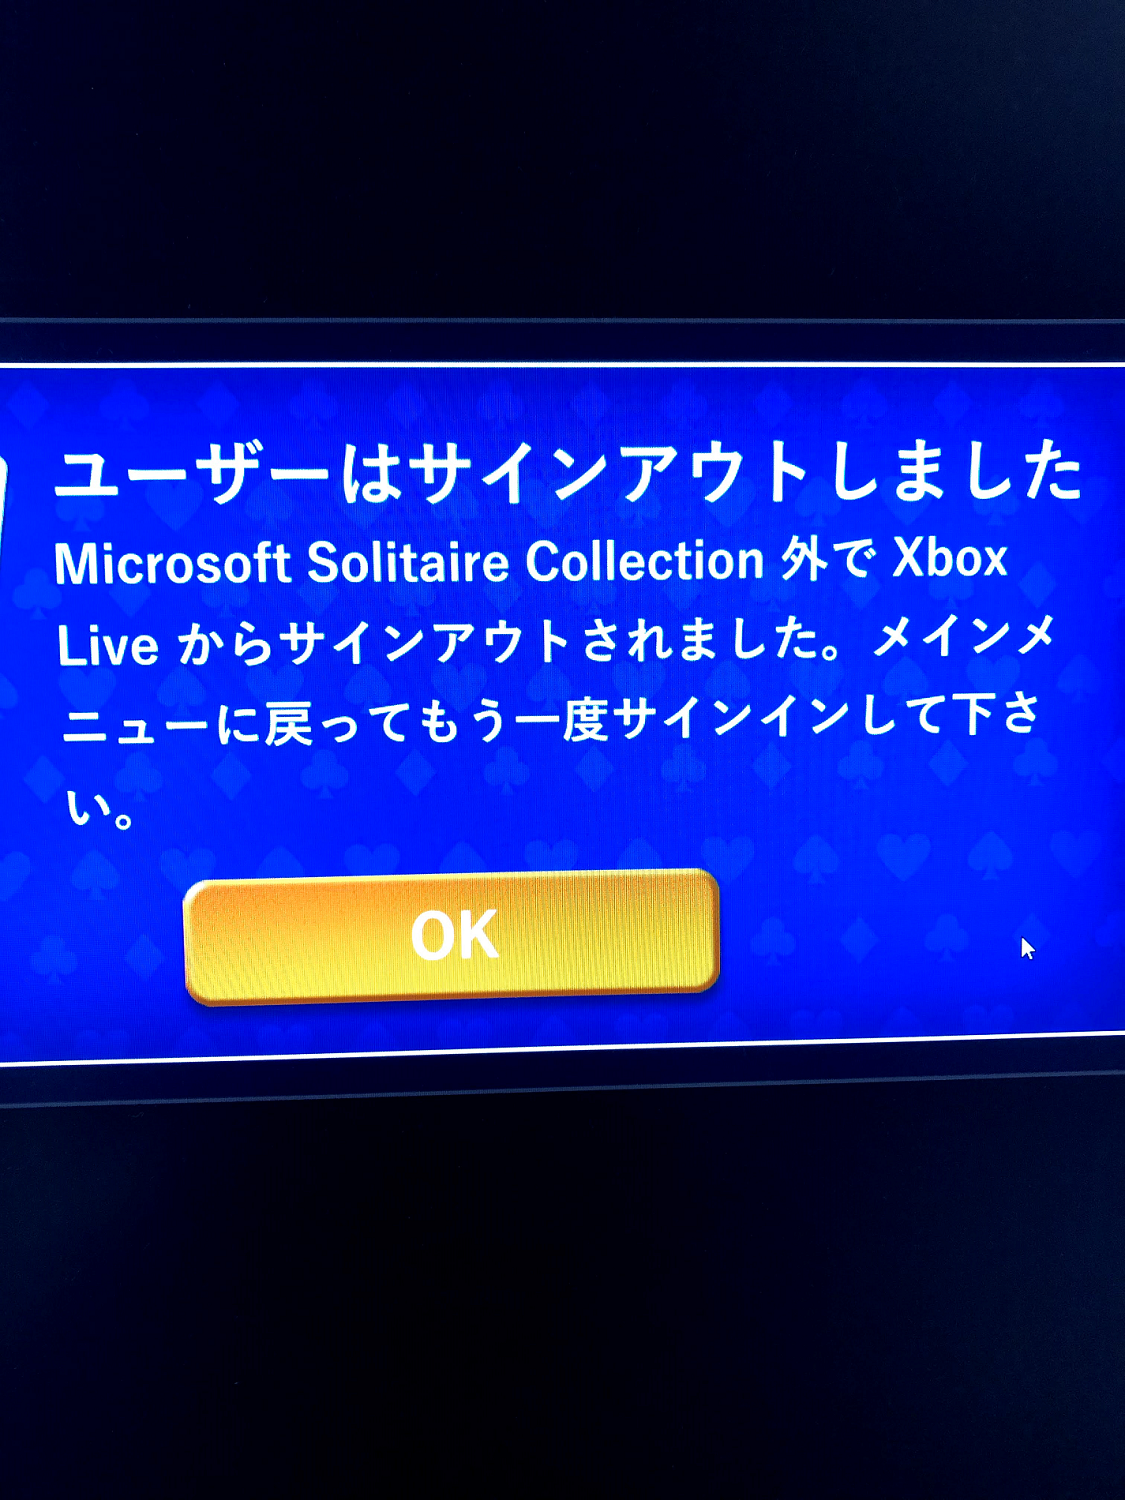 Microsoft Solitaire Collection にサインイン出来ない Microsoft コミュニティ